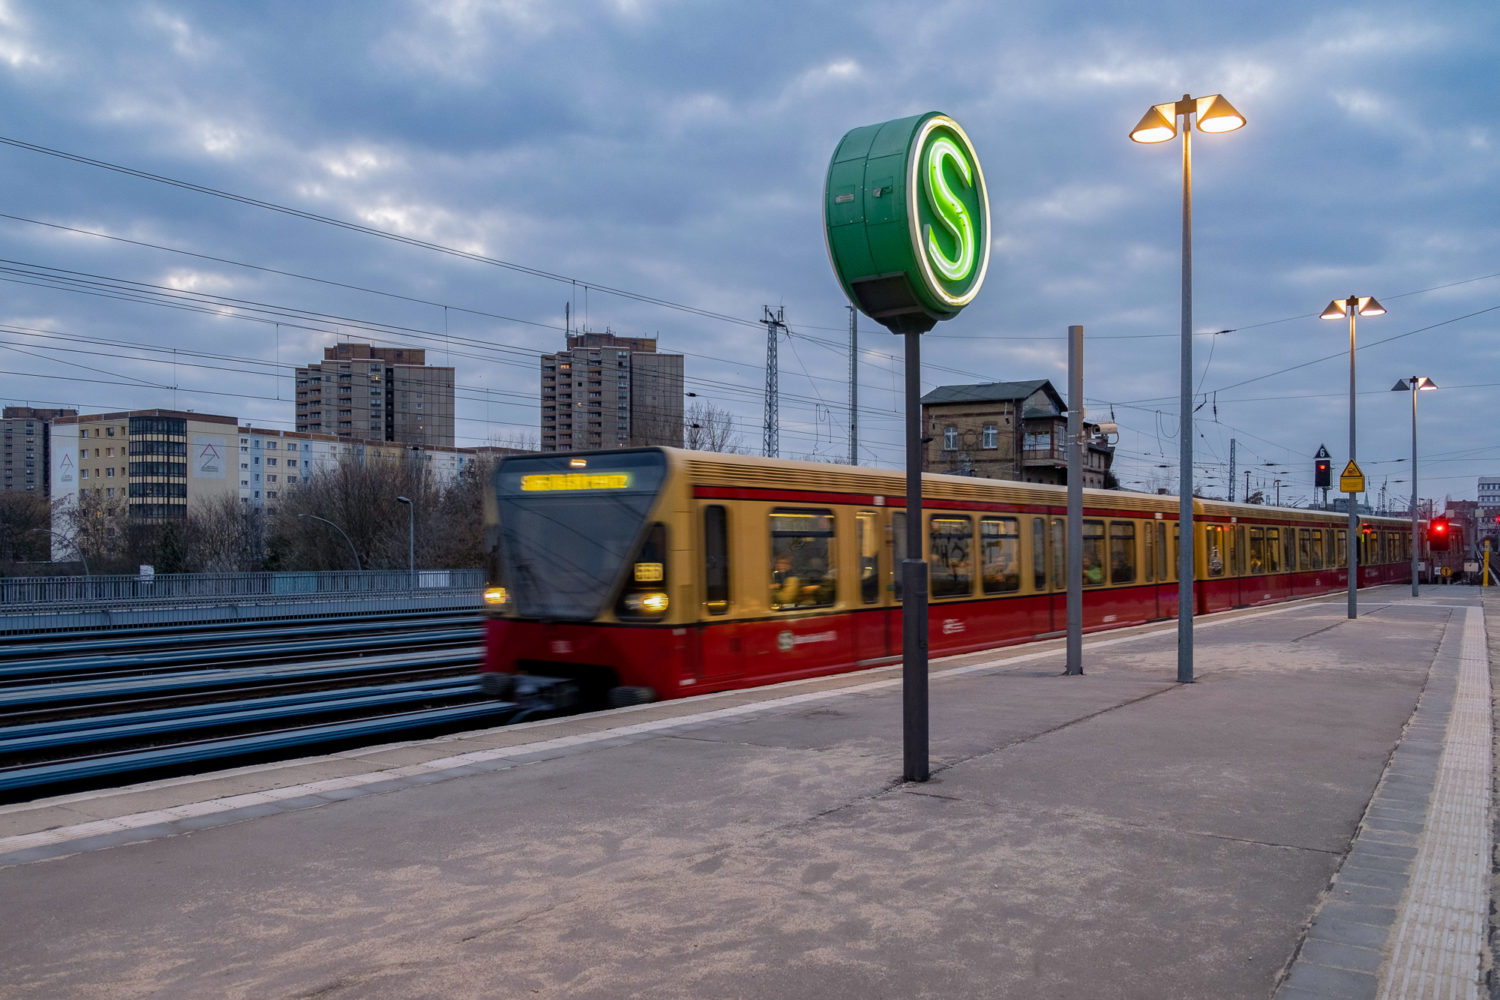 Im Kreis fahren und auf Platten blicken: der Ernst-Thälmann-Park am S-Bahnhof Greifswalder Straße. Foto: Imago/Zöllner